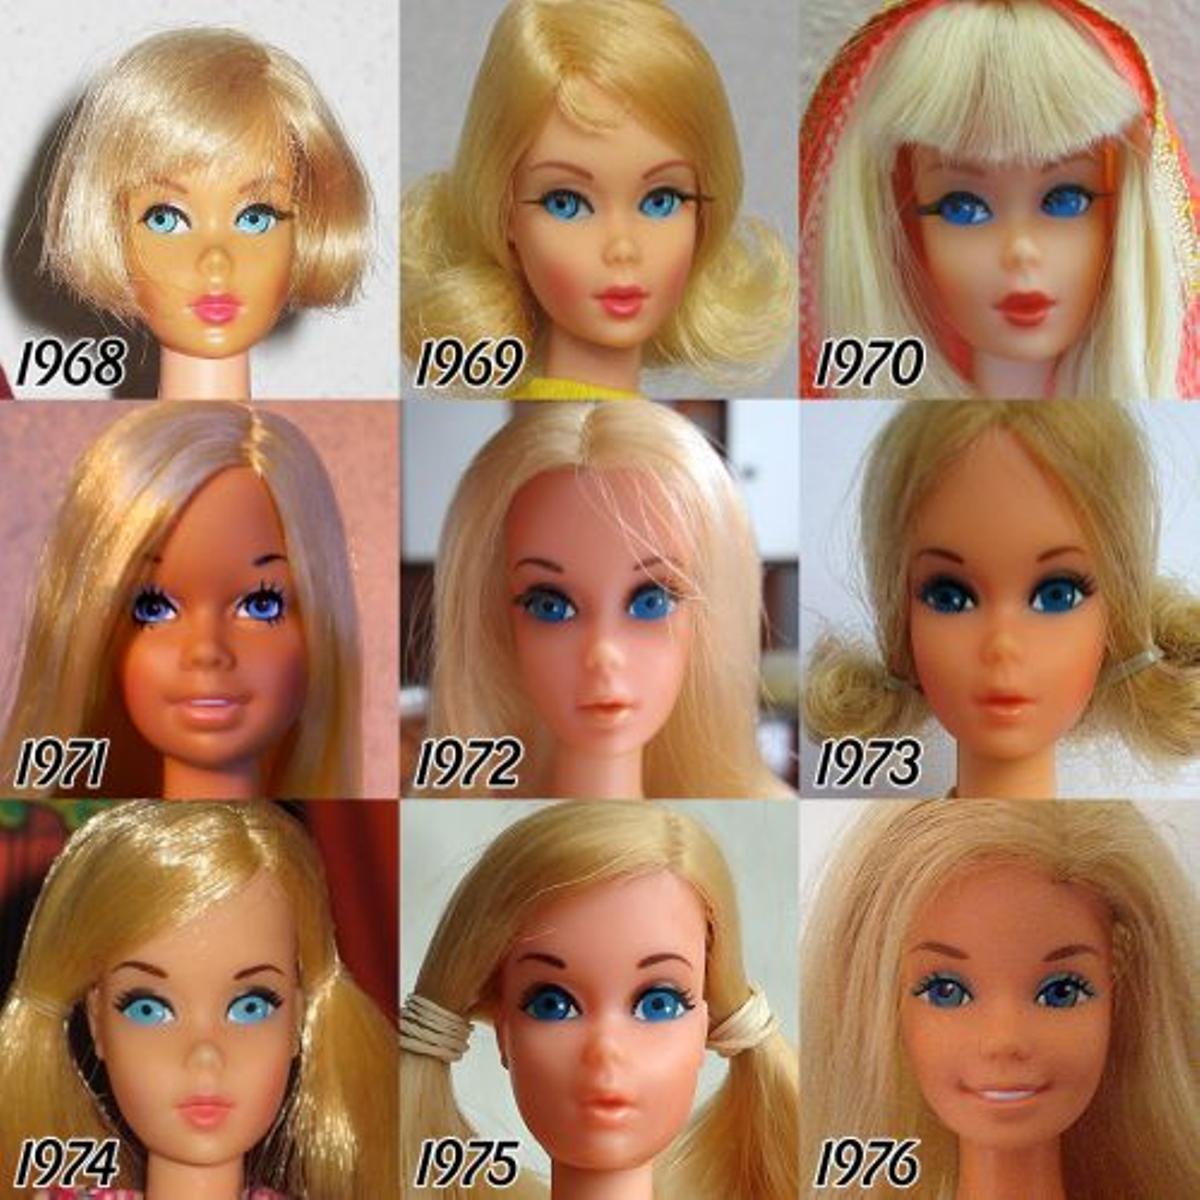 La evolución de Barbie desde 1968 a 1976